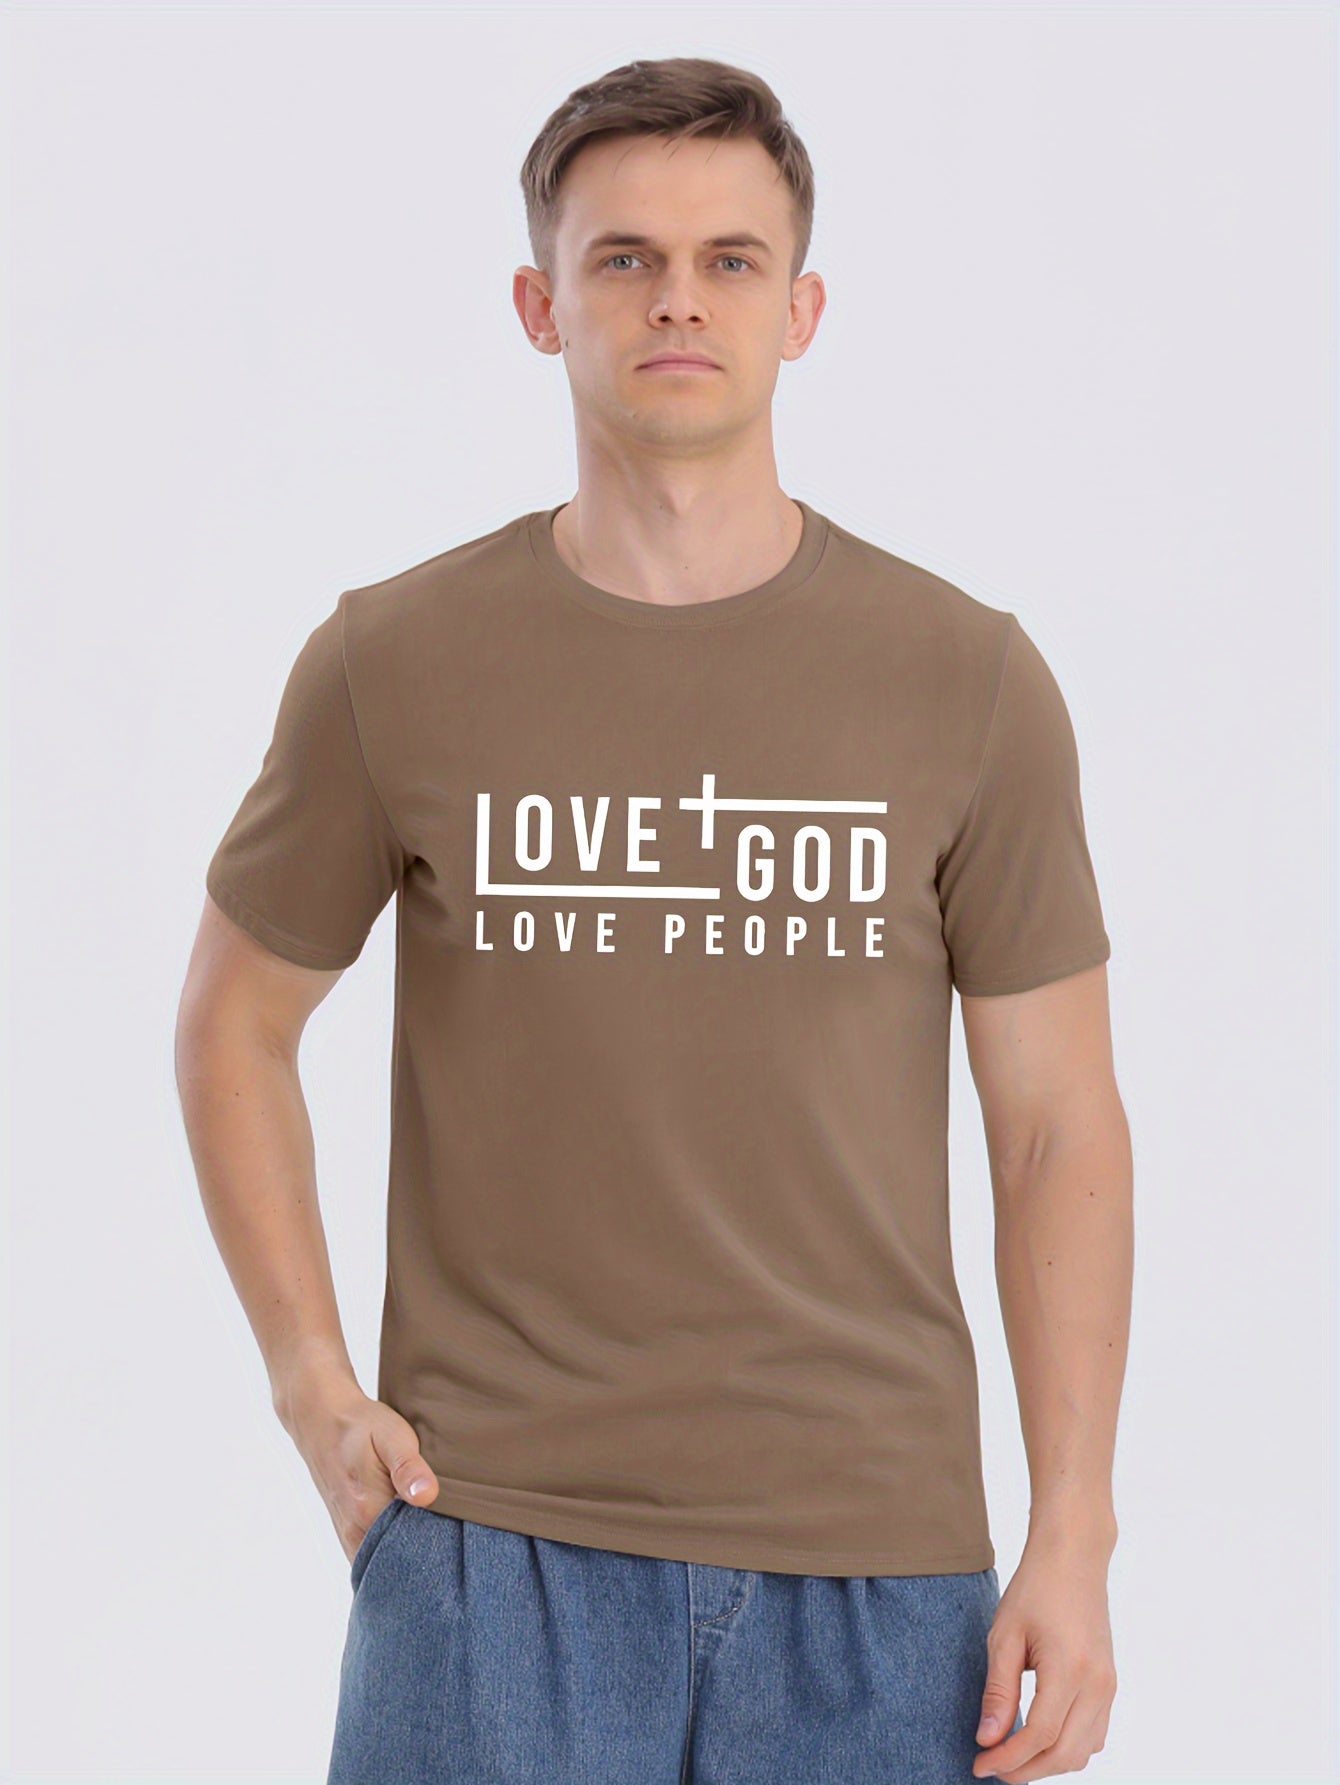 LOVE GOD LOVE PEOPLE Men's Christian T-shirt claimedbygoddesigns